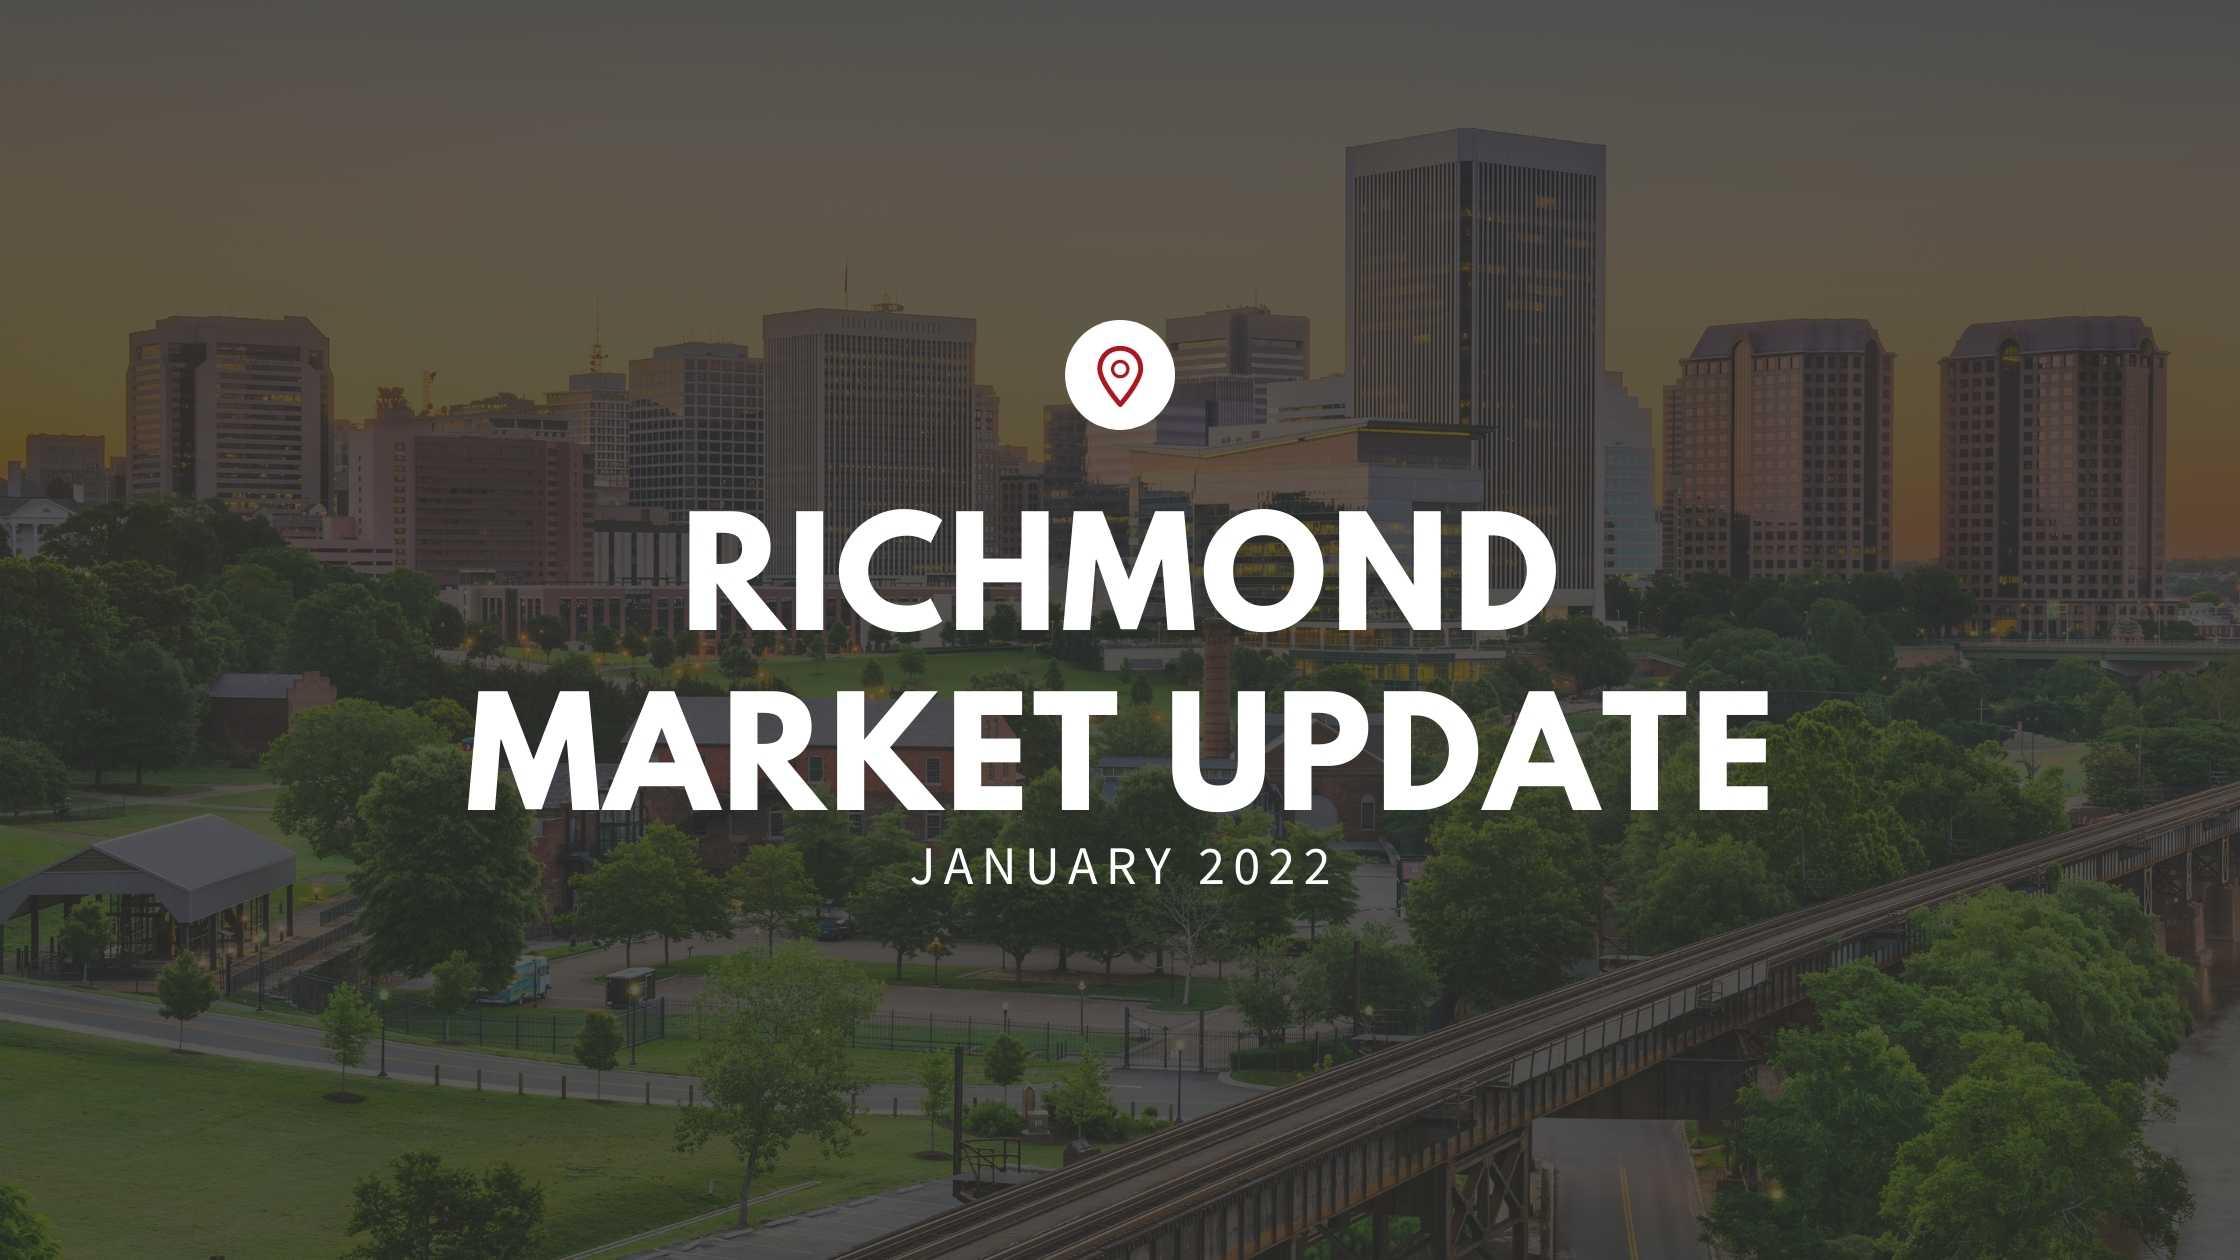 First Market Update in 2022 for Richmond, VA!